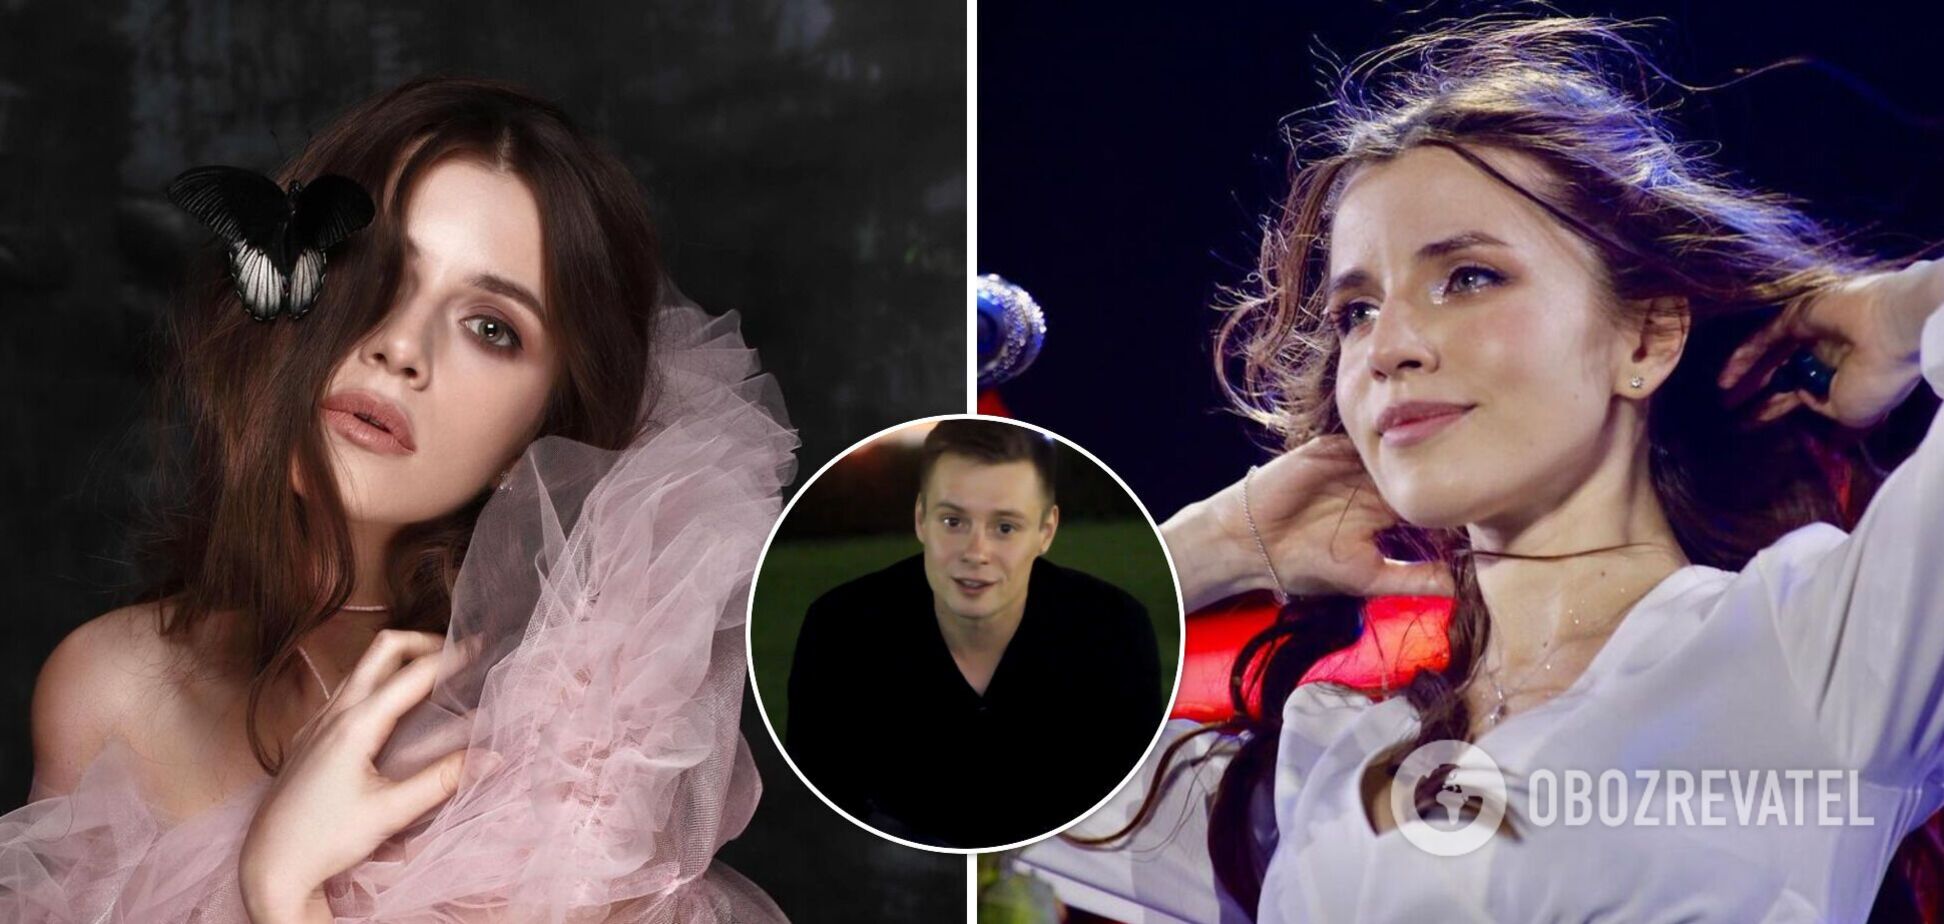 Российский рэпер украл песню у Кристины Соловий: теперь певице поступают угрозы. Подробности скандала